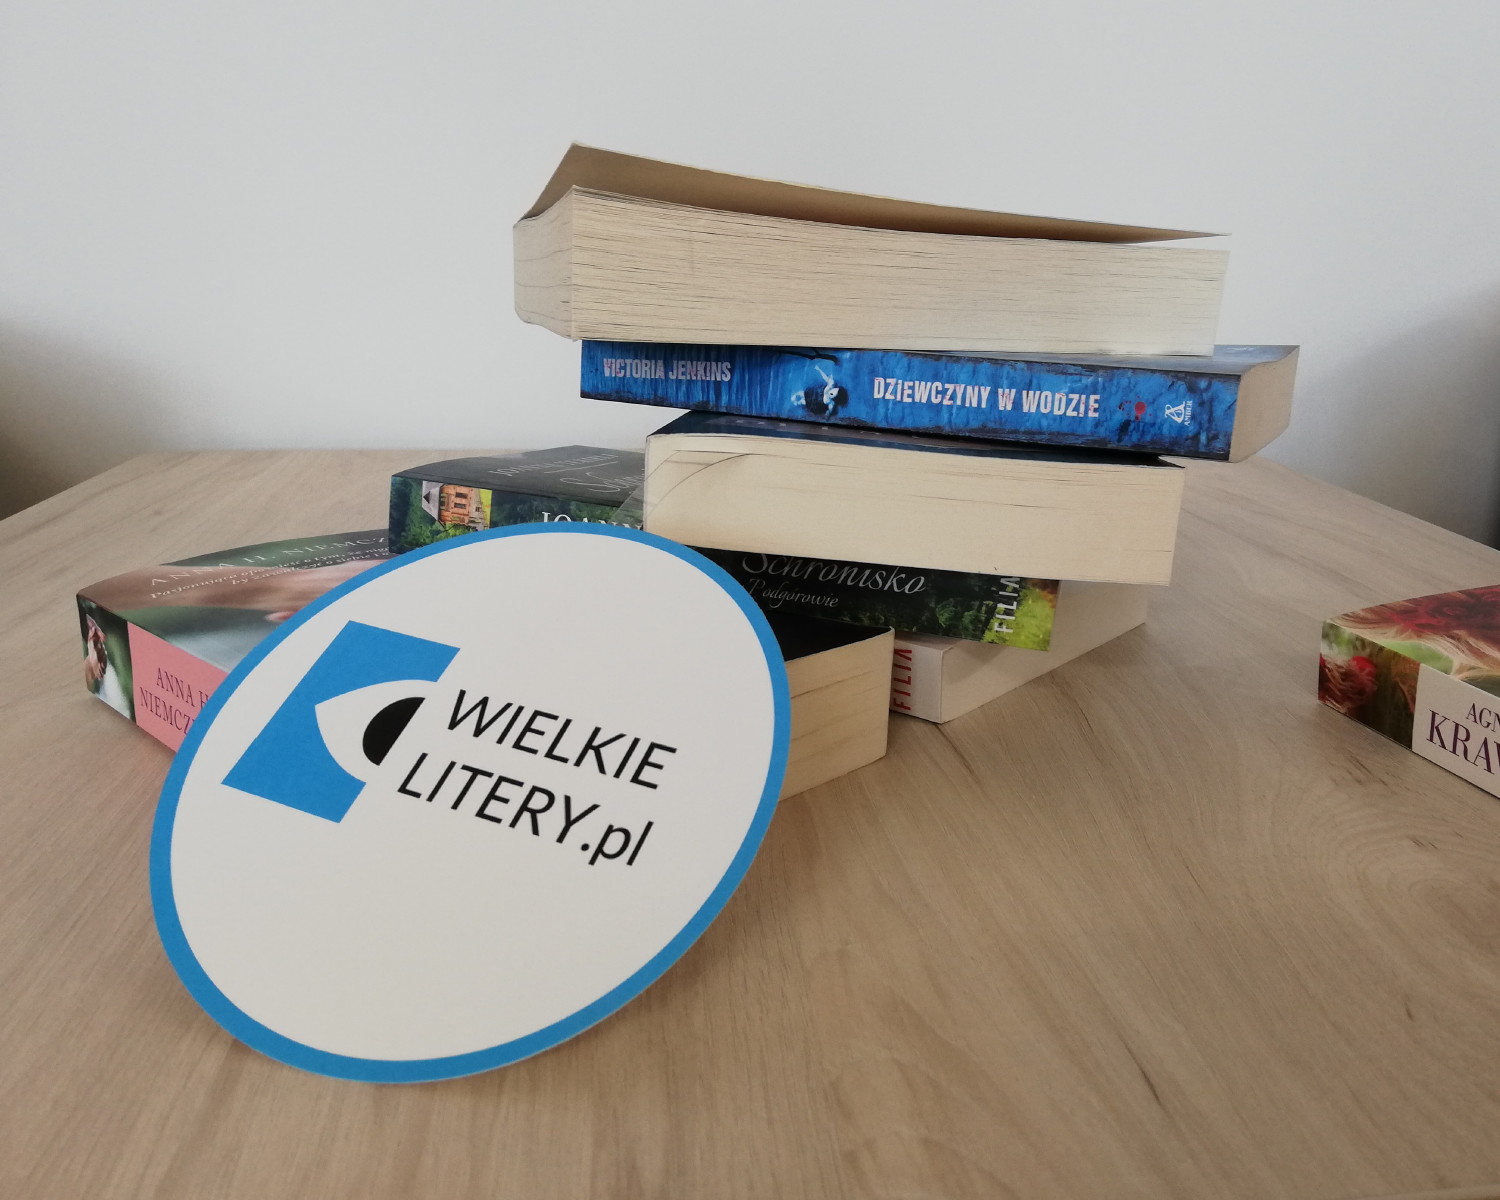 Kilka książek na stoliku, z przodu okrągłe logo Wielkie Litery.pl